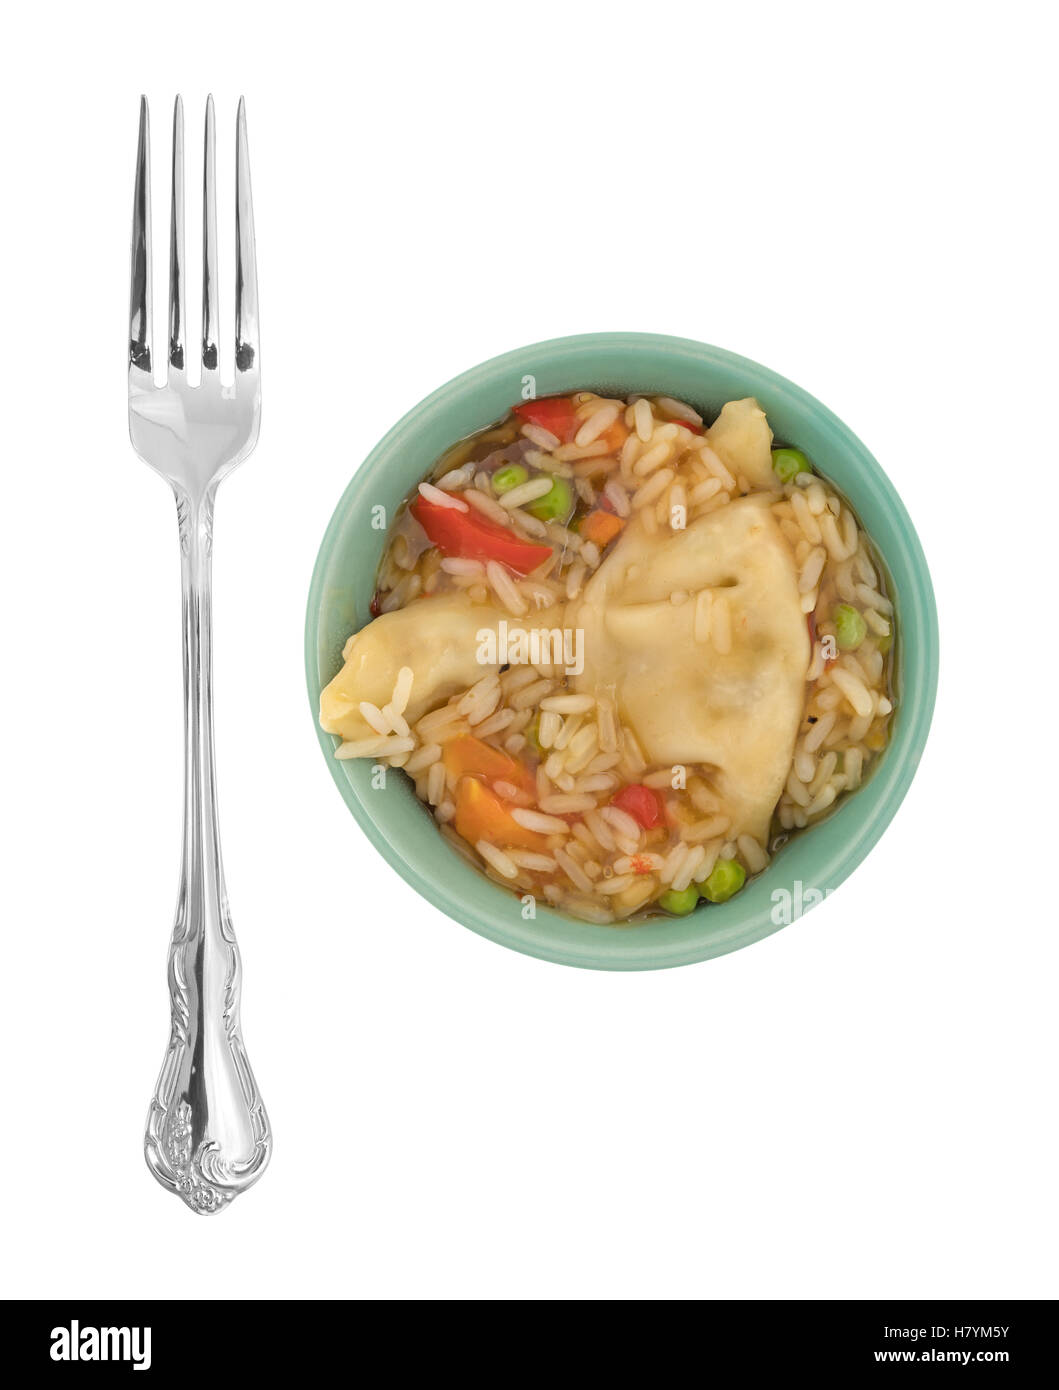 Un repas végétarien potstickers aux micro-ondes dans un bol vert avec une fourchette pour le côté isolé sur un fond blanc. Banque D'Images